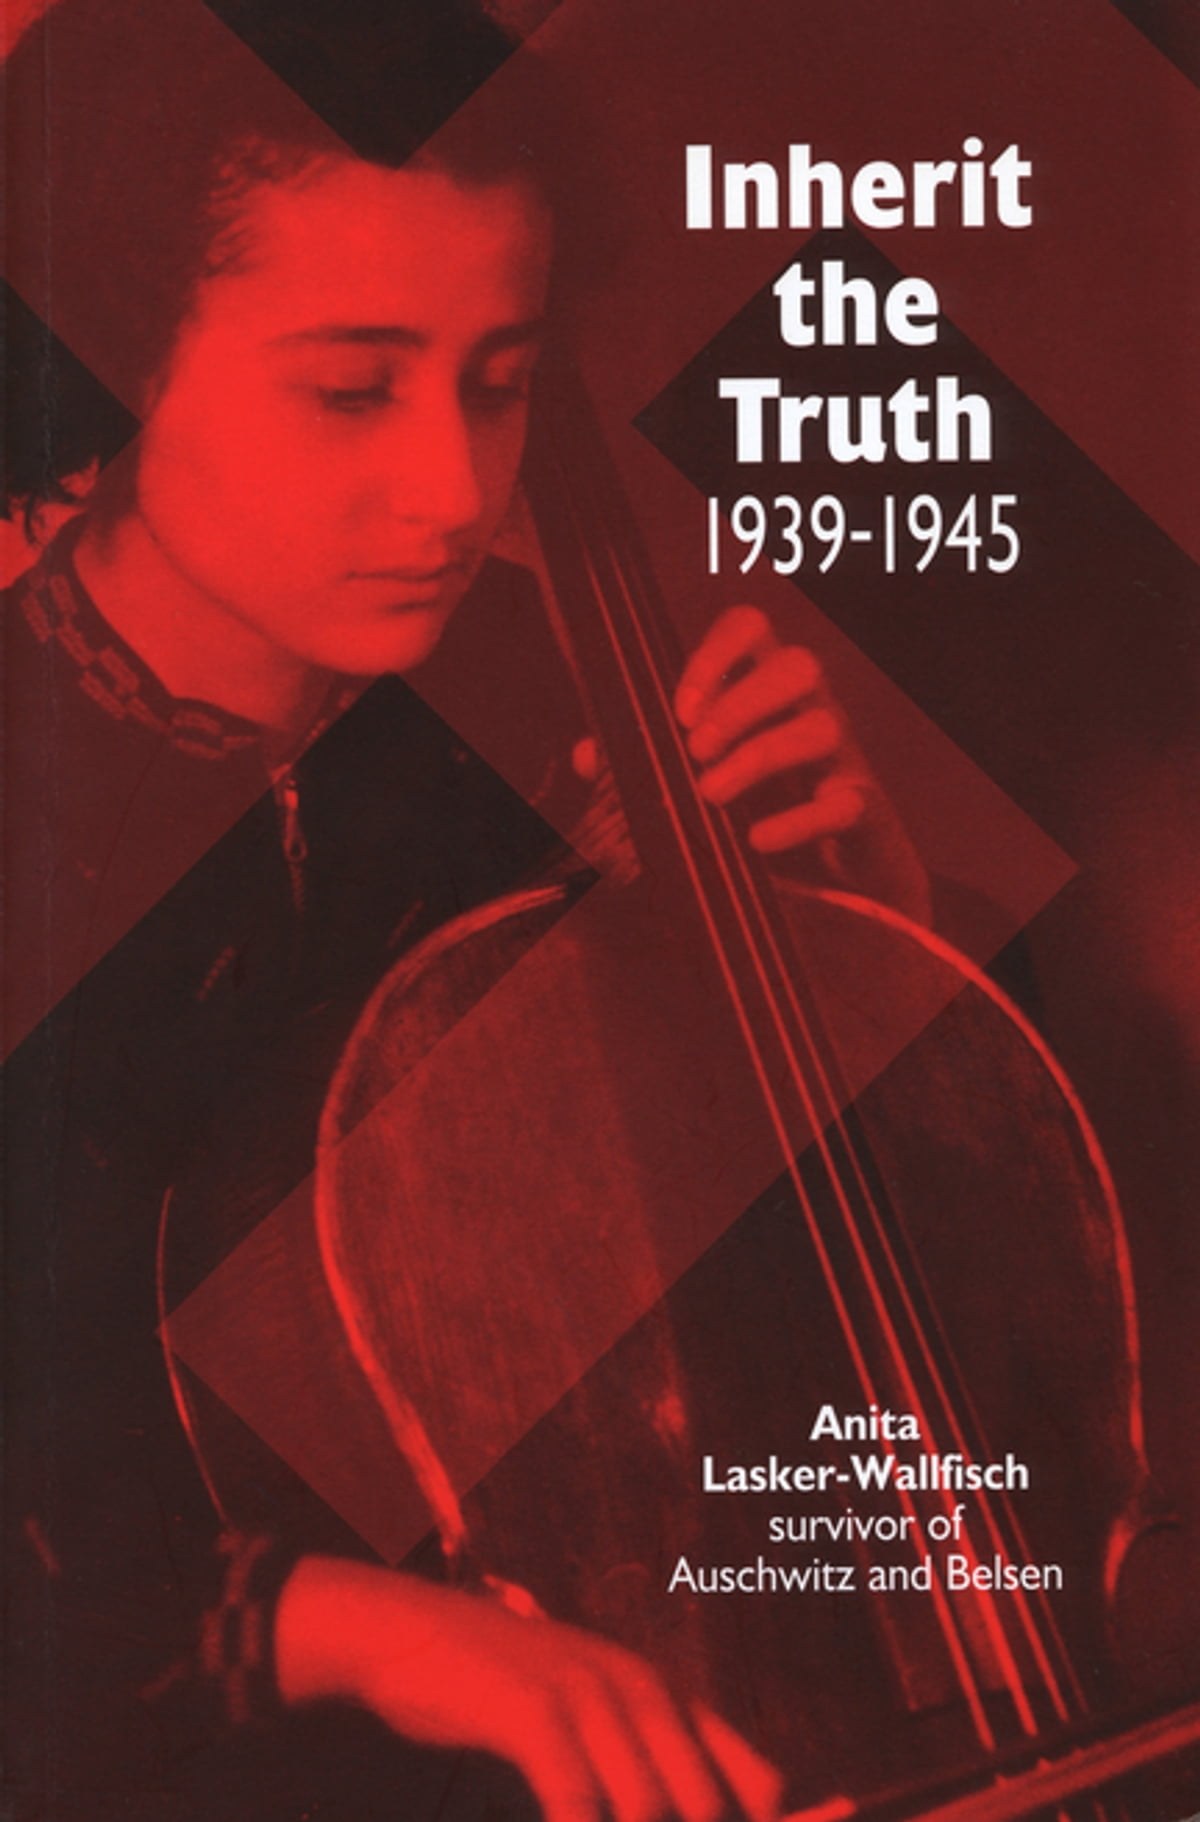 Inherit the Truth (1939-1945) by Anita Lasker-Wallfisch